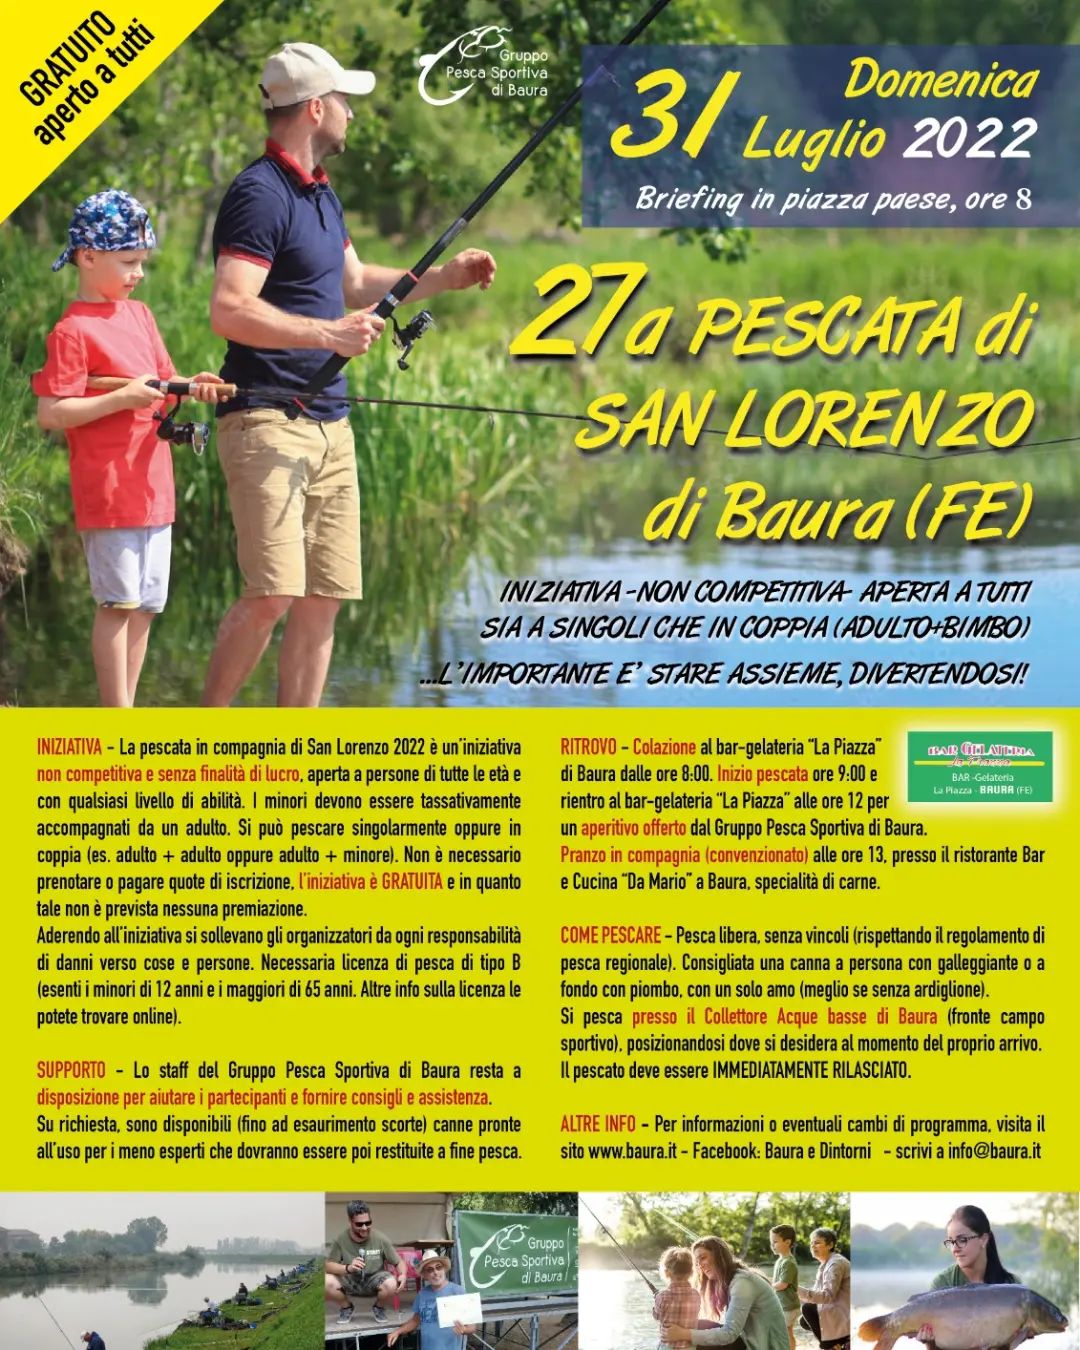 27a Pescata di San Lorenzo di Baura